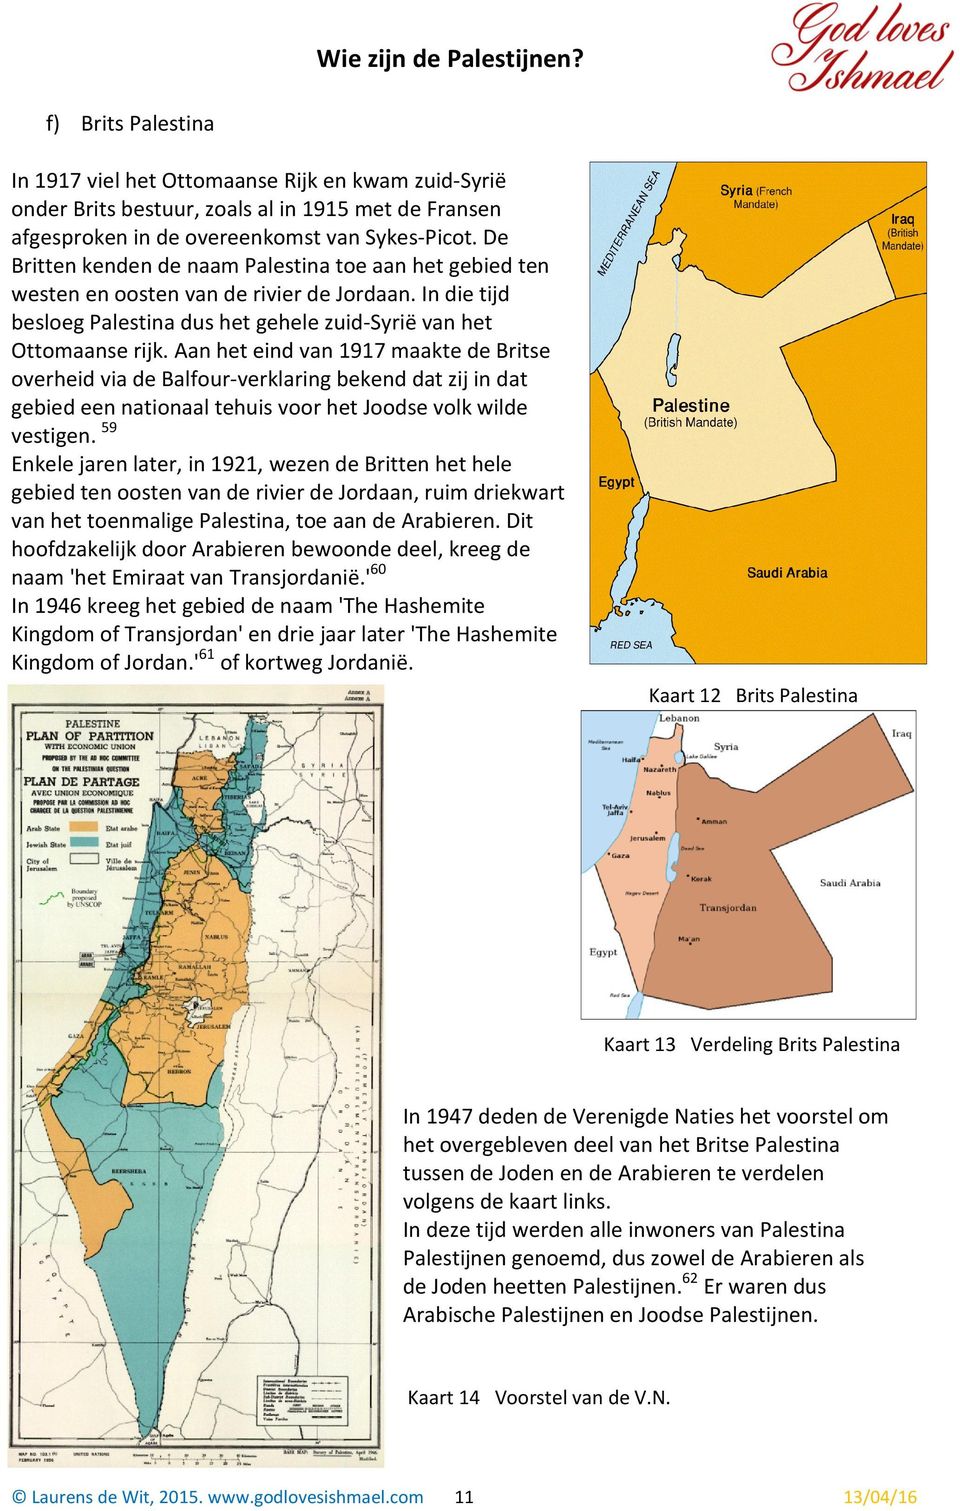 Aan het eind van 1917 maakte de Britse overheid via de Balfour-verklaring bekend dat zij in dat gebied een nationaal tehuis voor het Joodse volk wilde vestigen.